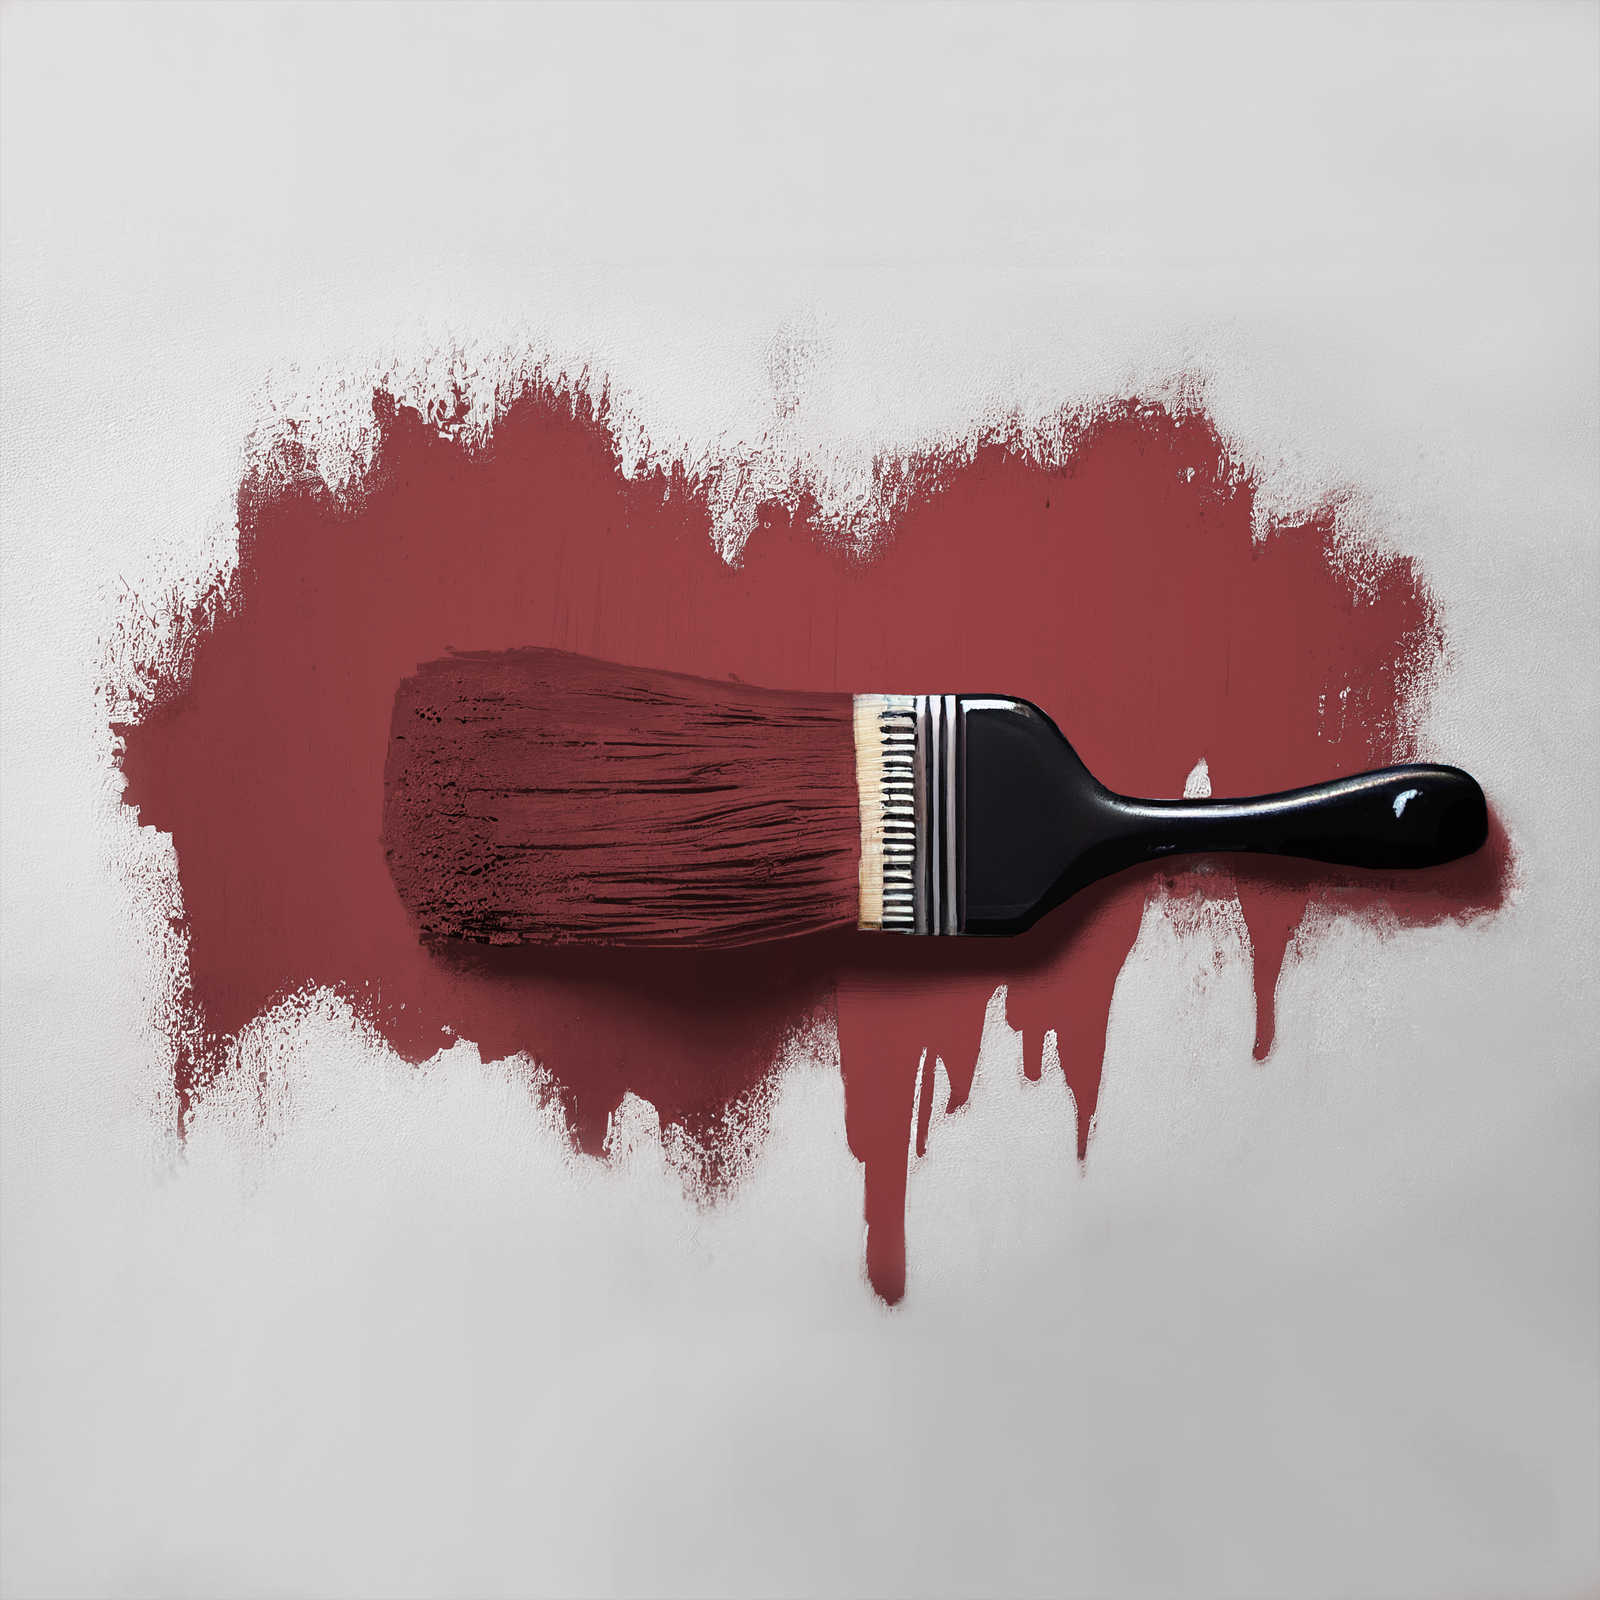             Pintura mural TCK7006 »Perky Pomegranate« en rojo oscuro pasión – 2,5 litro
        